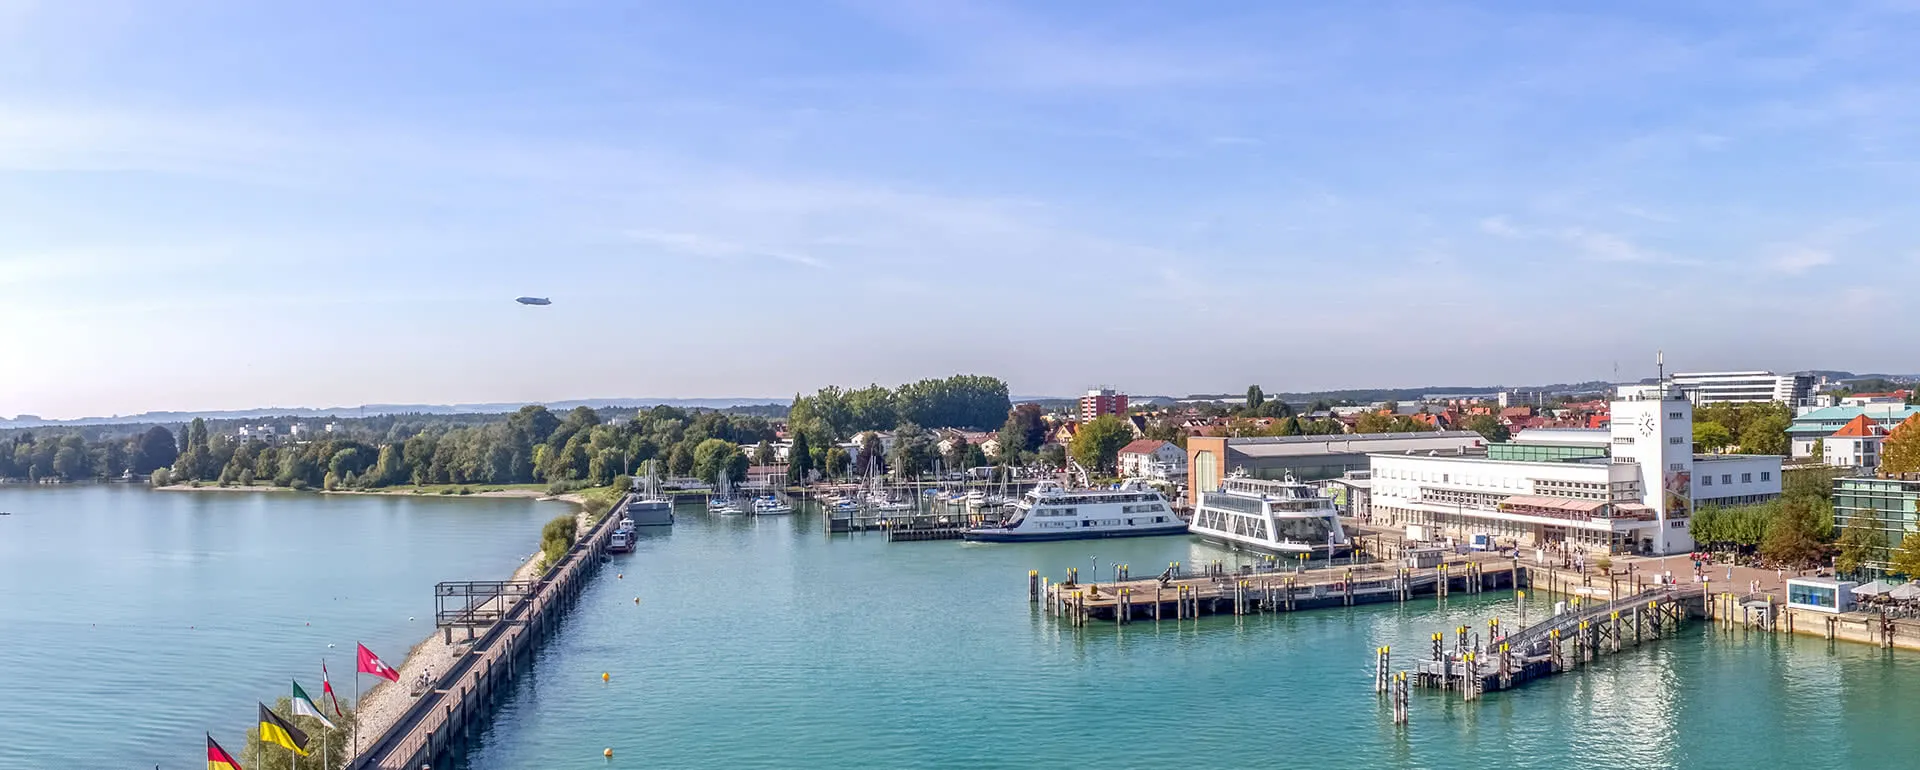 Friedrichshafen - das Reiseziel mit Jugendherbergen